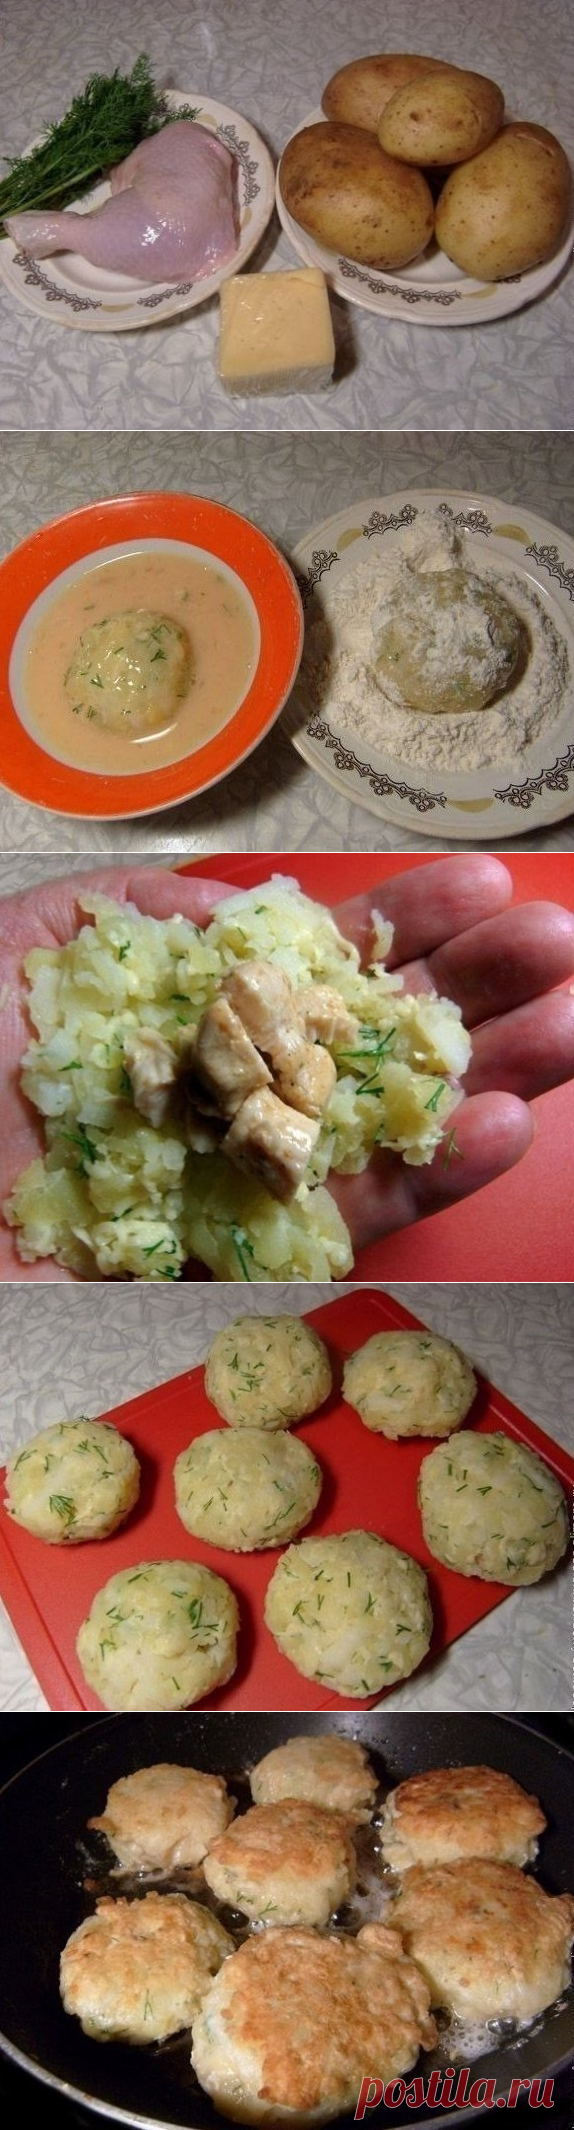 Как приготовить зразы картофельные с курицей - рецепт, ингредиенты и фотографии